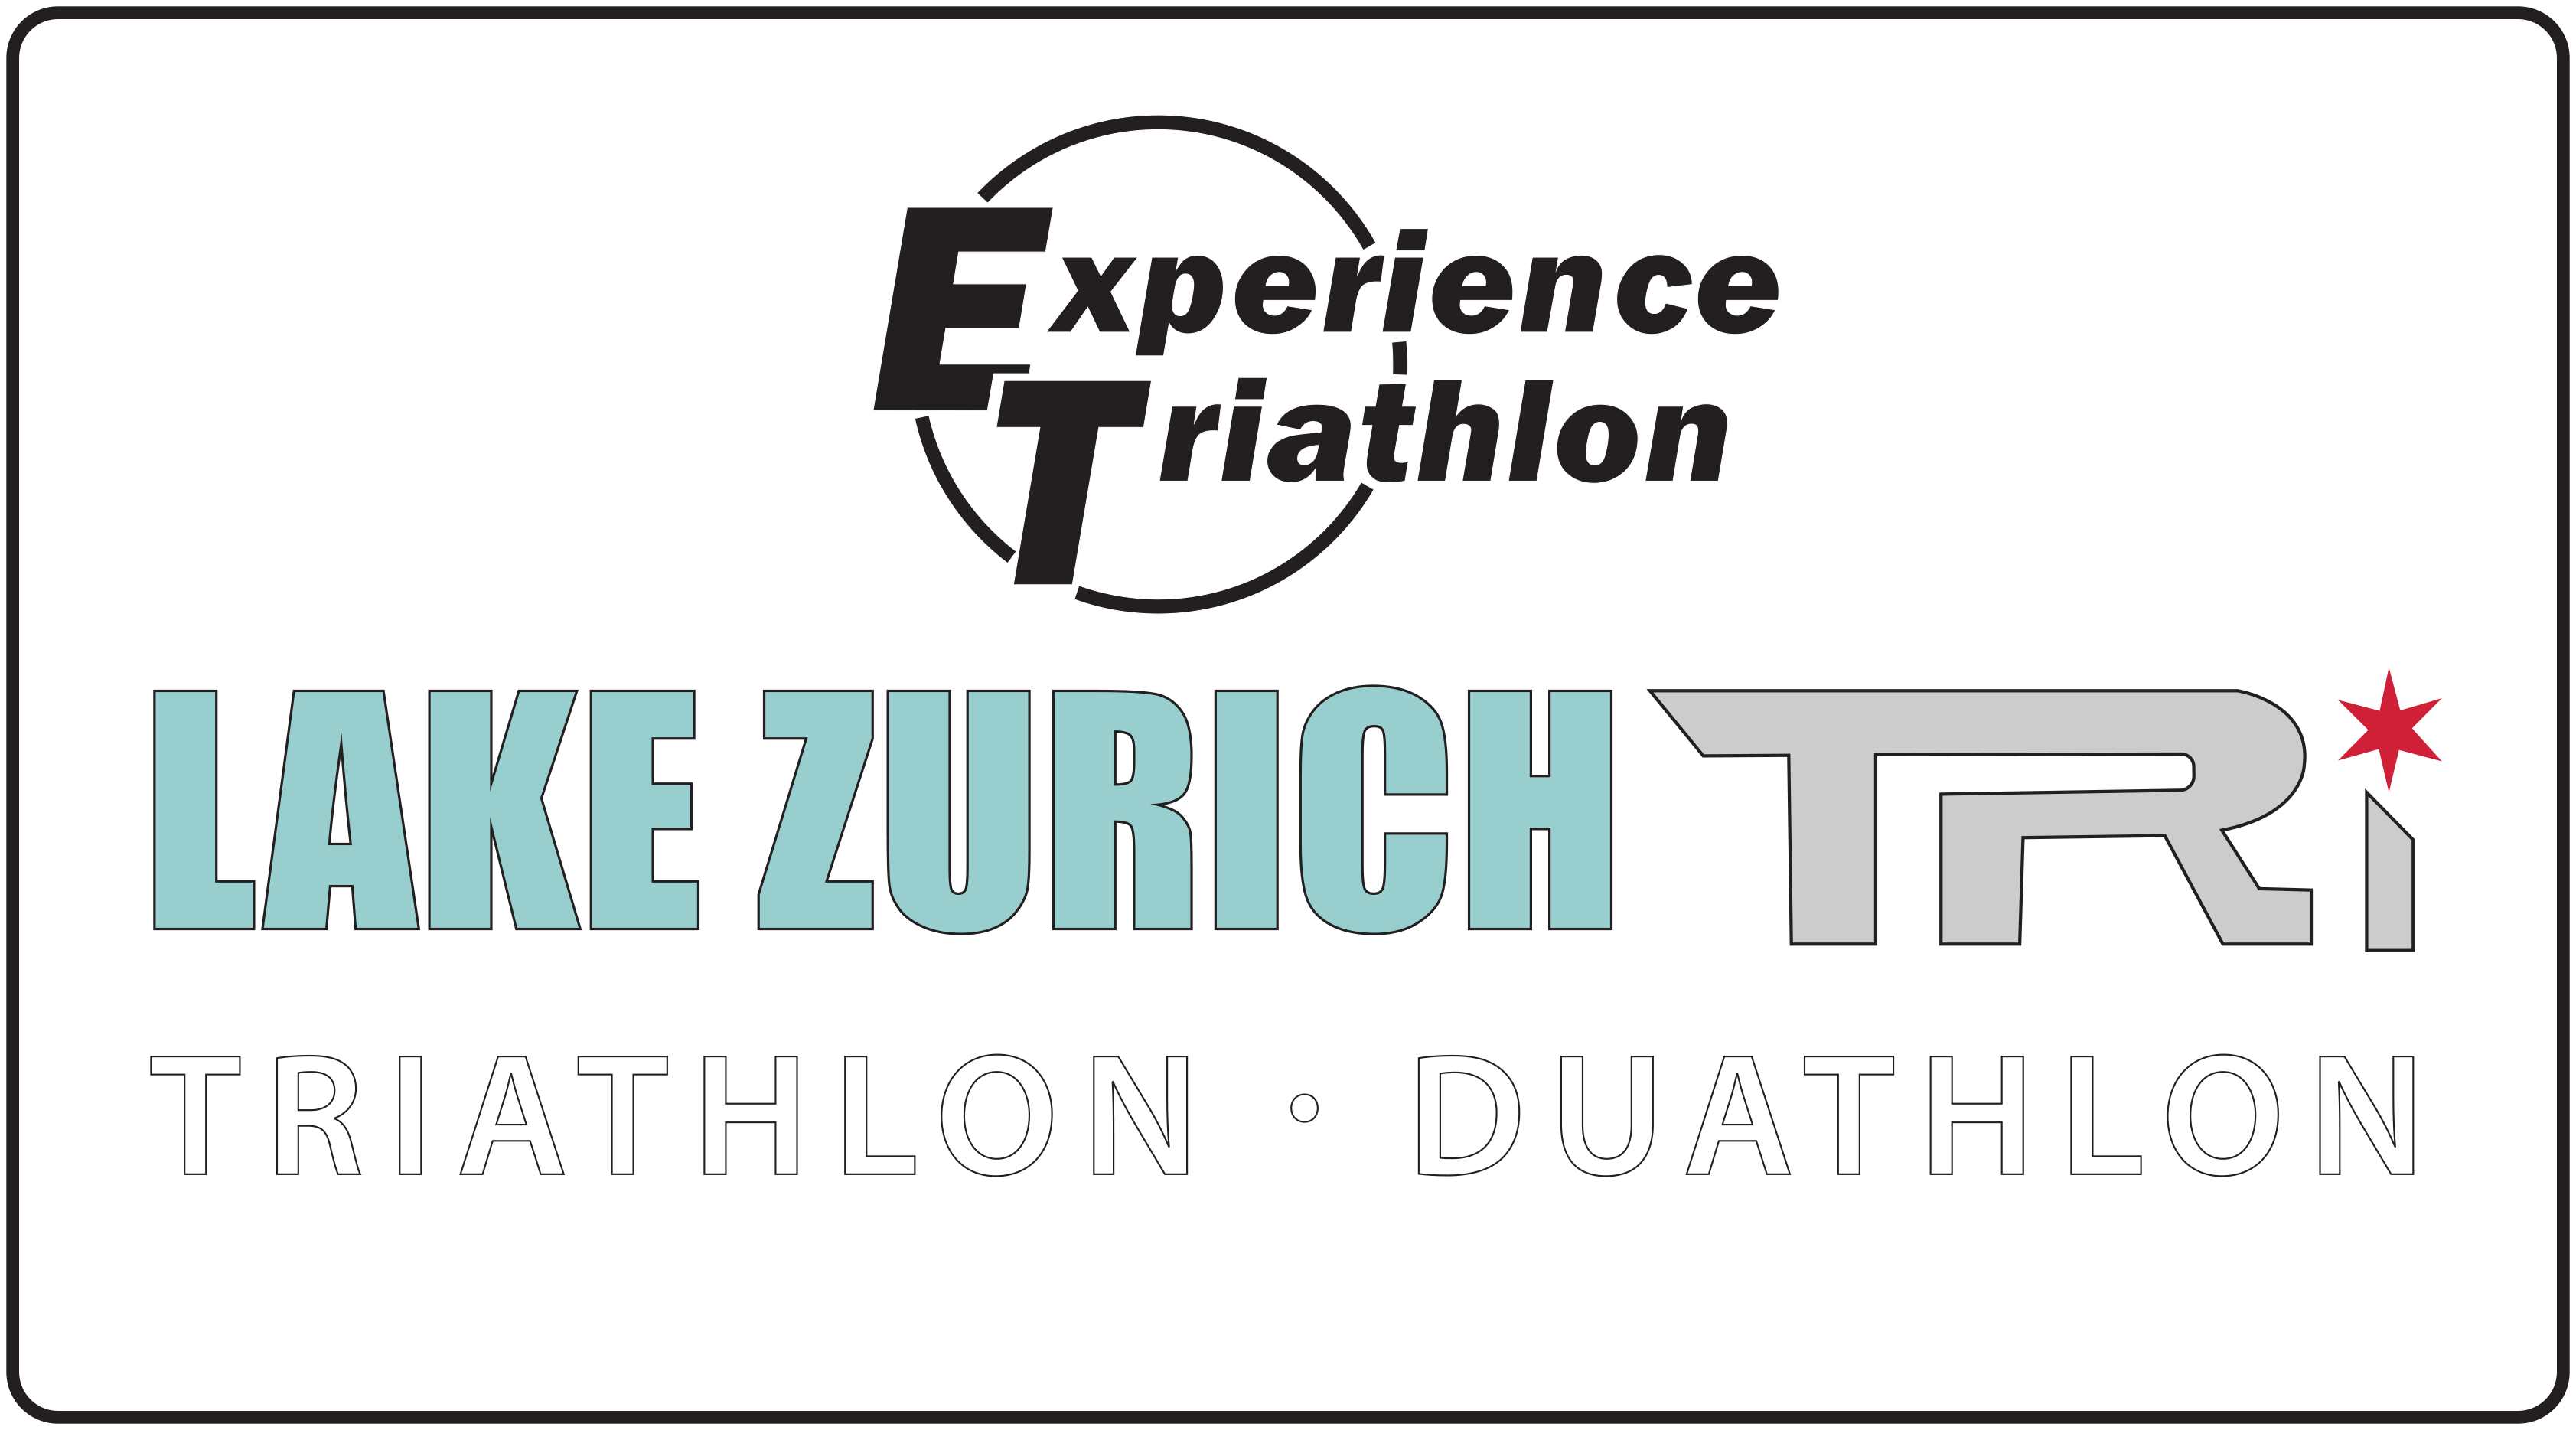 Lake Zurich Triathlon